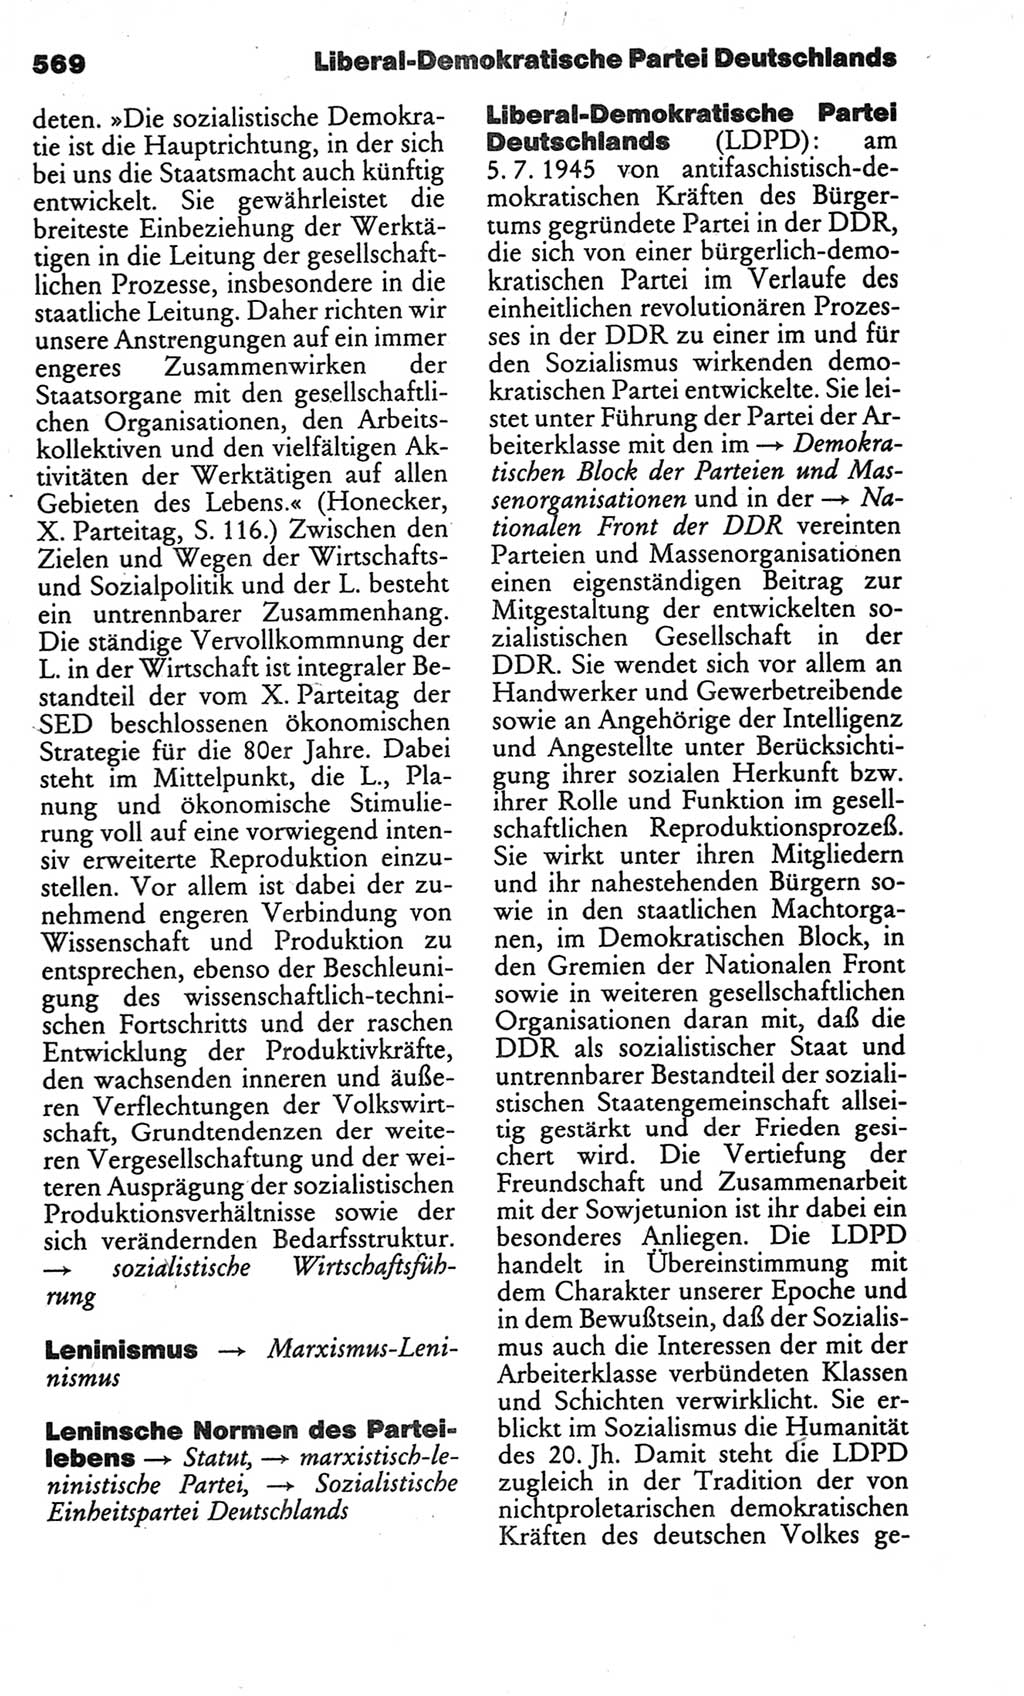 Kleines politisches Wörterbuch [Deutsche Demokratische Republik (DDR)] 1986, Seite 569 (Kl. pol. Wb. DDR 1986, S. 569)